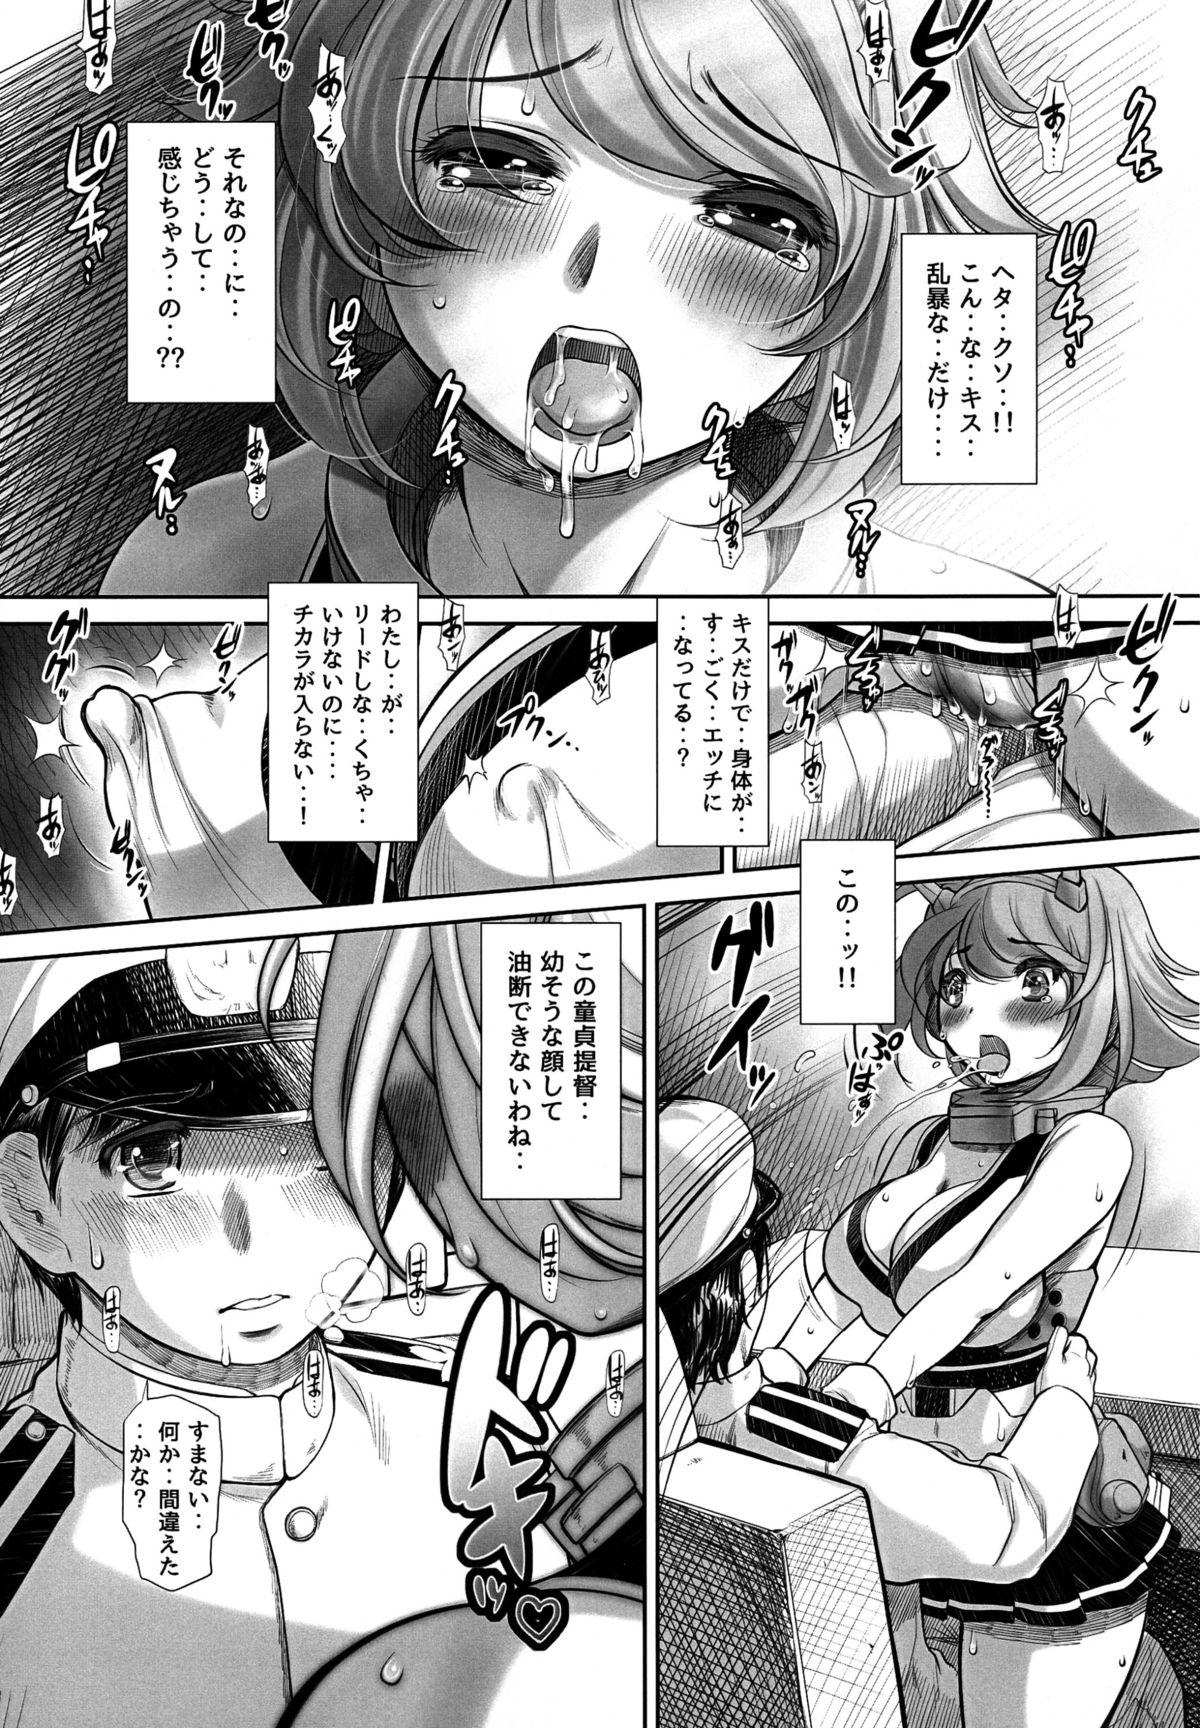 Teensnow Doutei ga Yurusareru no wa Shousa made dayo ne? - Kantai collection Cuminmouth - Page 9